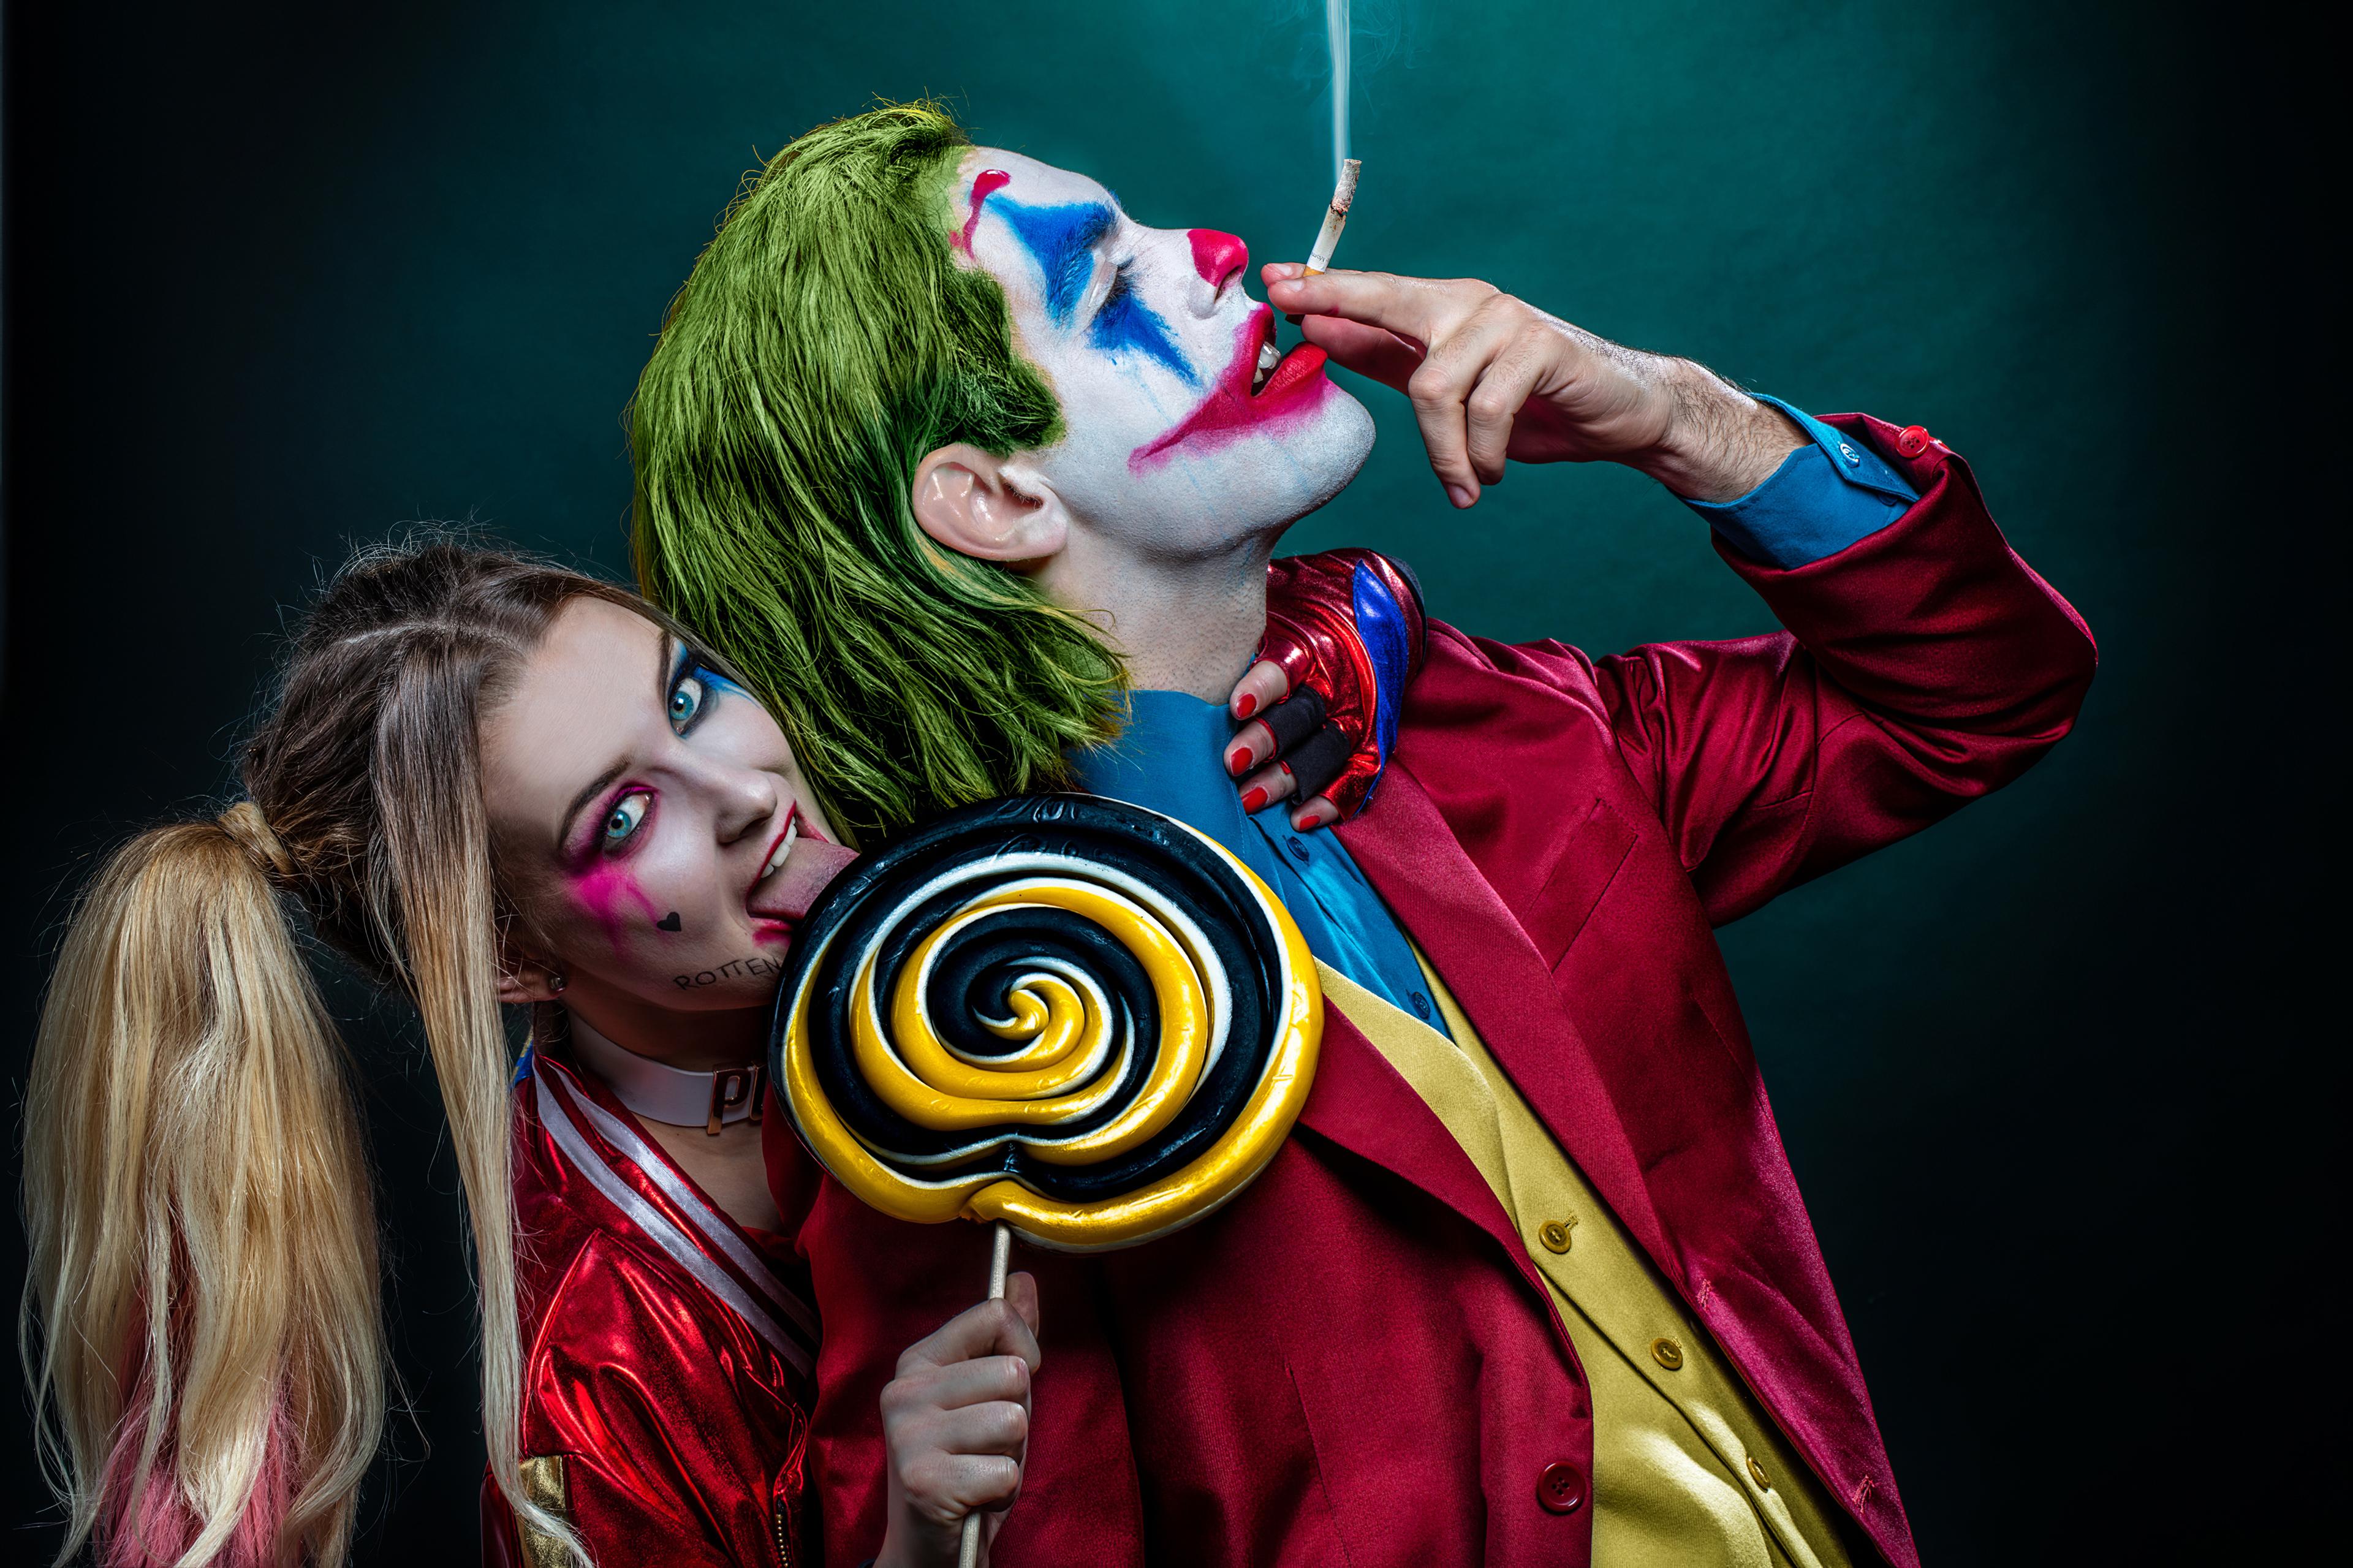 3840 x 2559 · jpeg - Sfondi Harley Quinn E Joker | SfondiWe